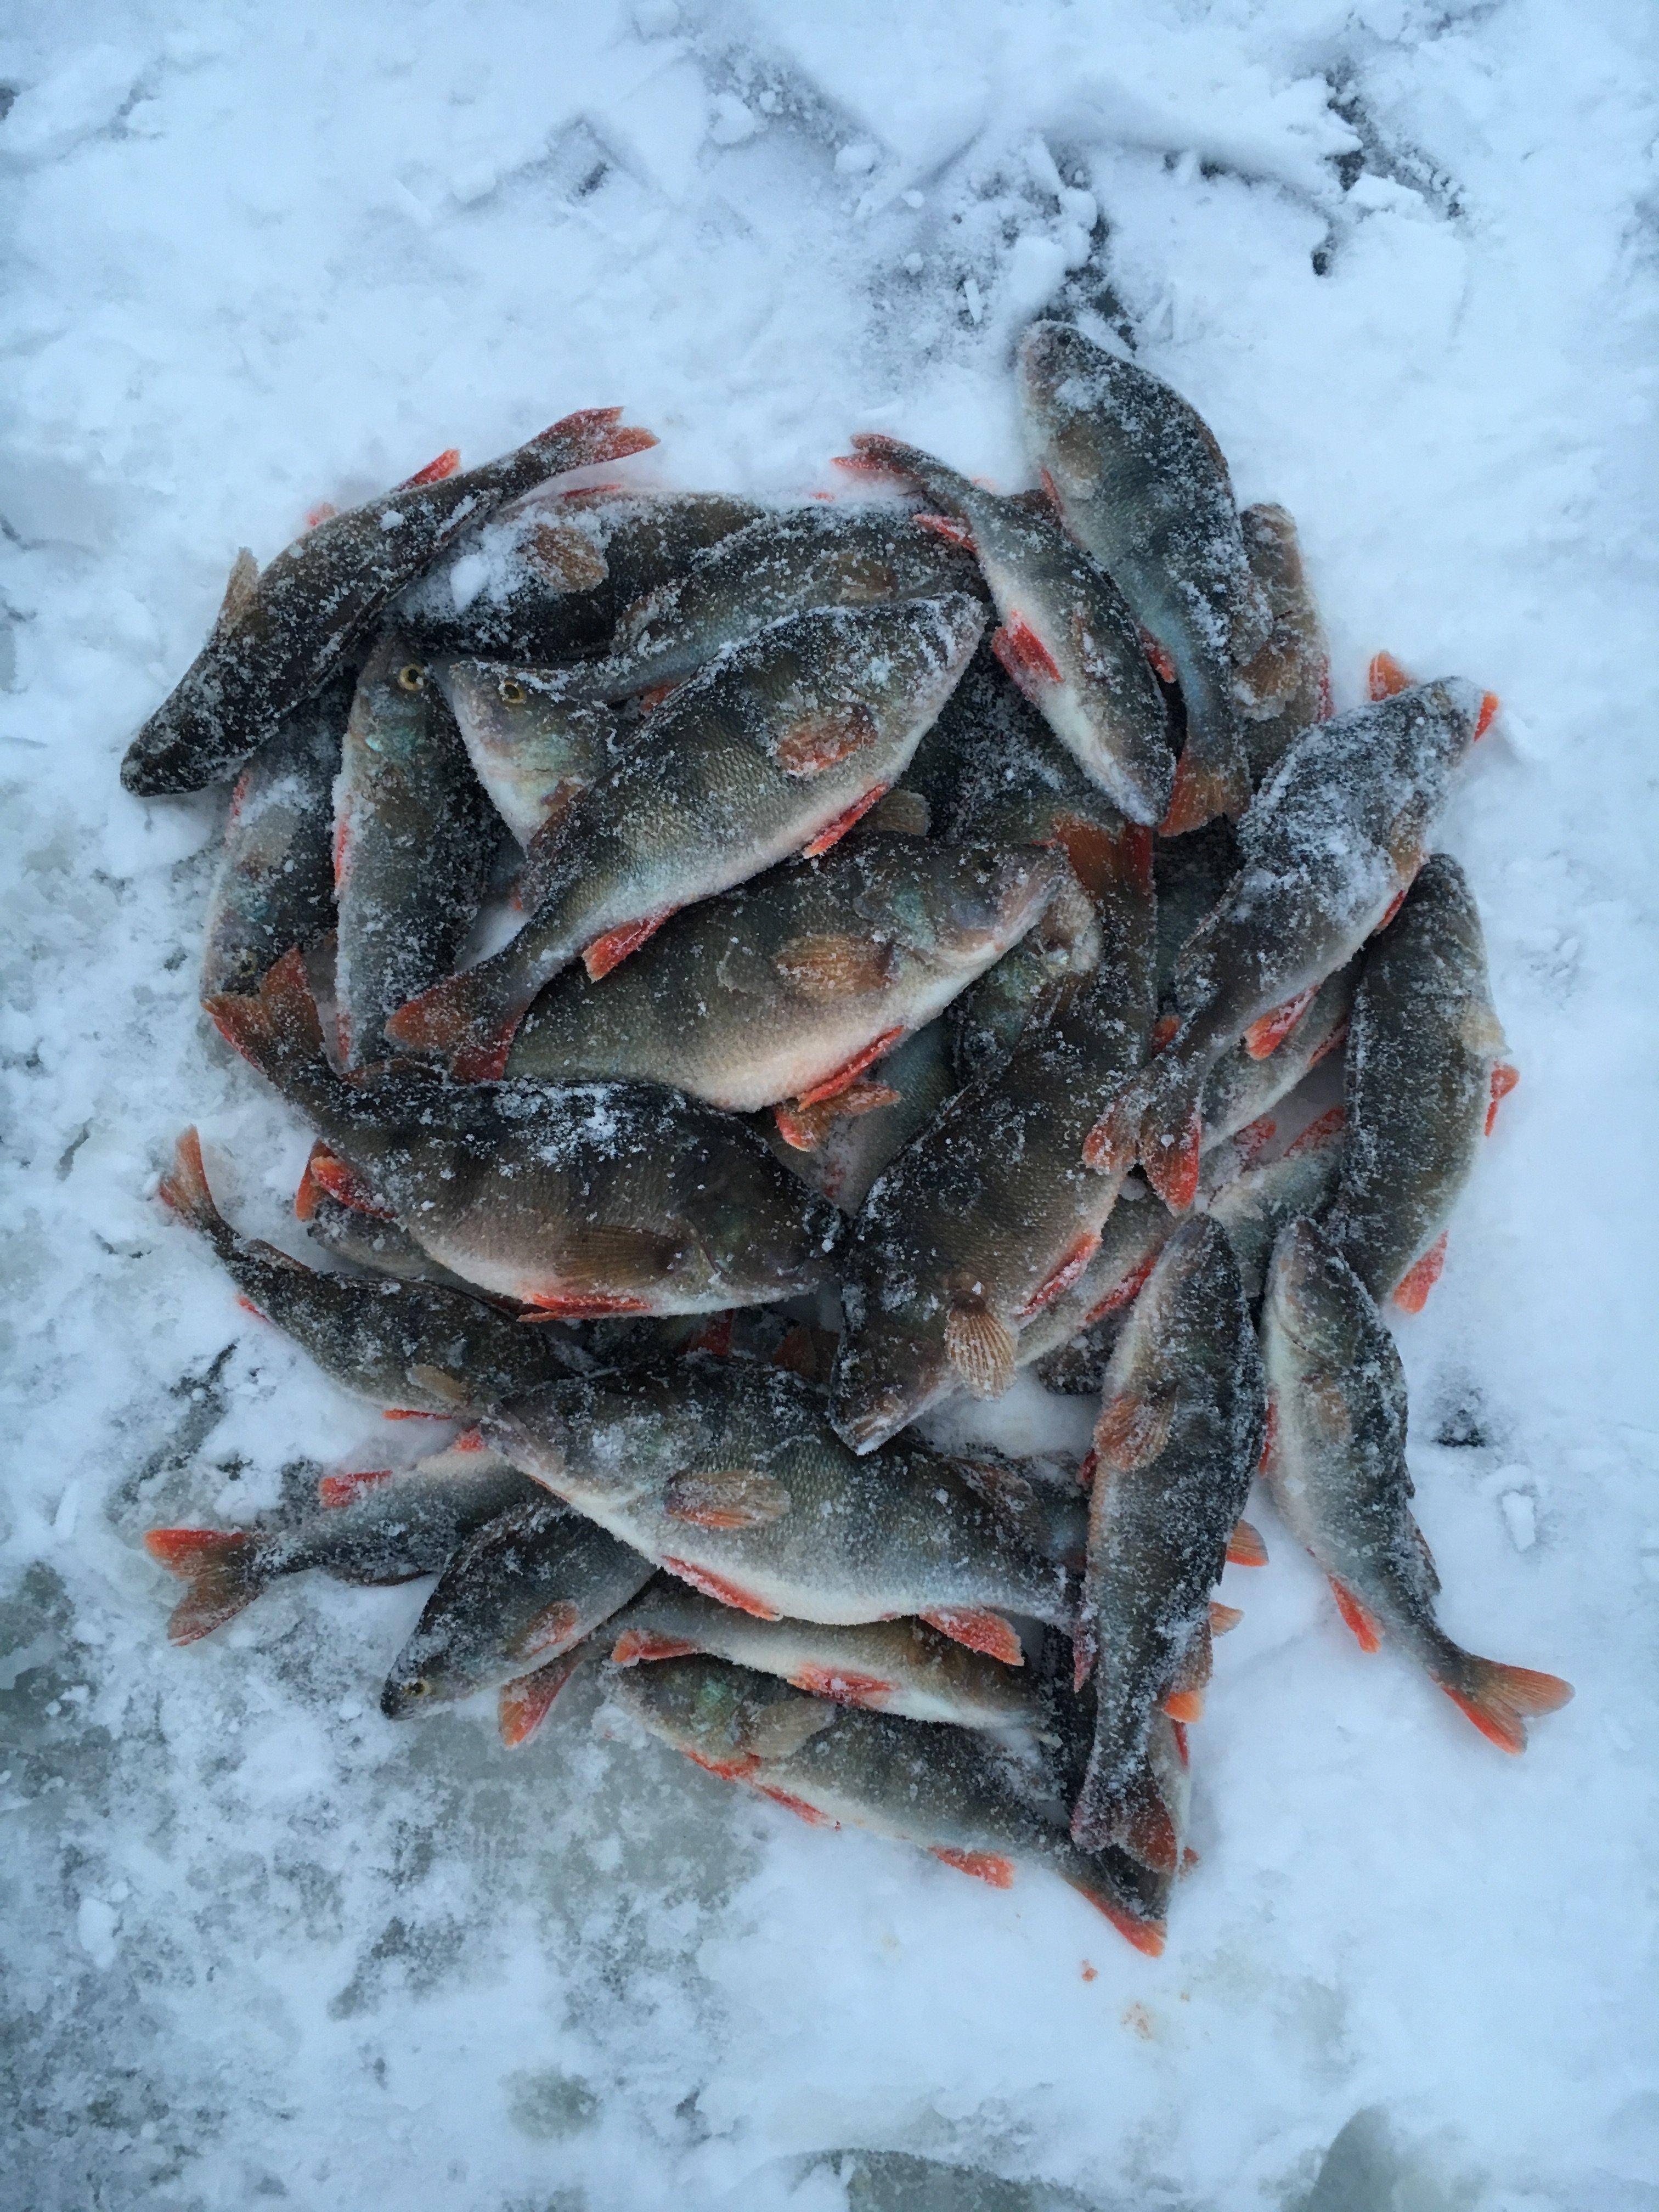 Фион 74 челябинская область. Отчеты о рыбалке. Рыбалка на окуня рядом с Ижевском зимой. Отчеты о зимней рыбалке. Форум рыбаков.